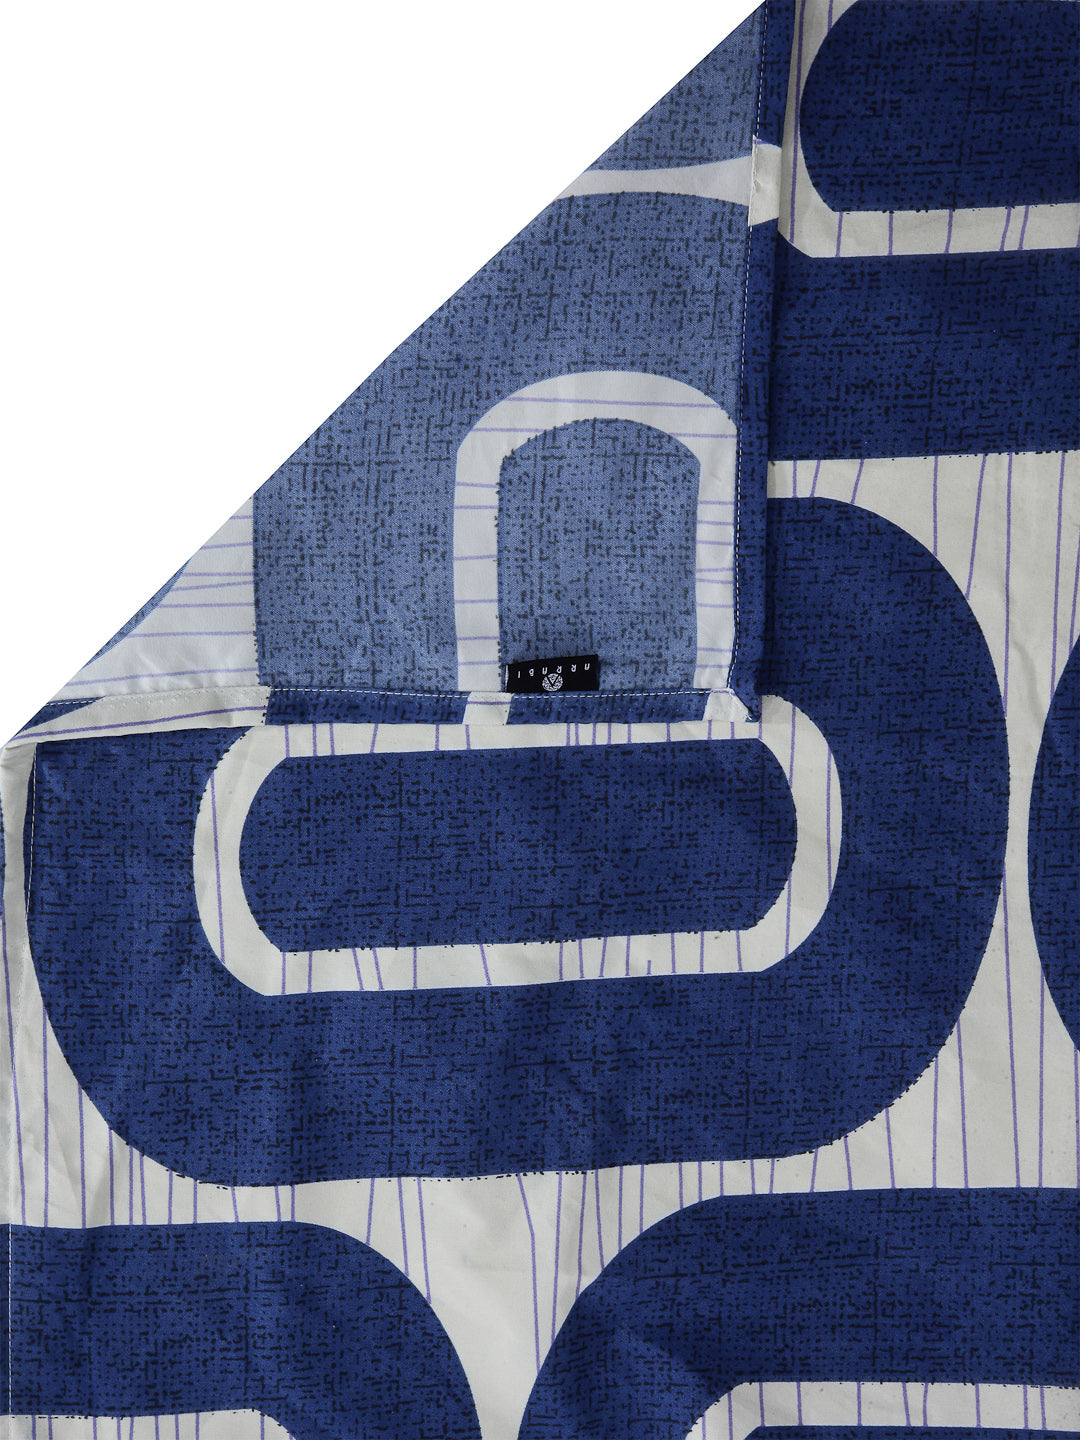 Arrabi Blue Geometric TC Cotton Blend Super King Size Bedsheet with 2 Pillow Cover (270 x 260 cm)